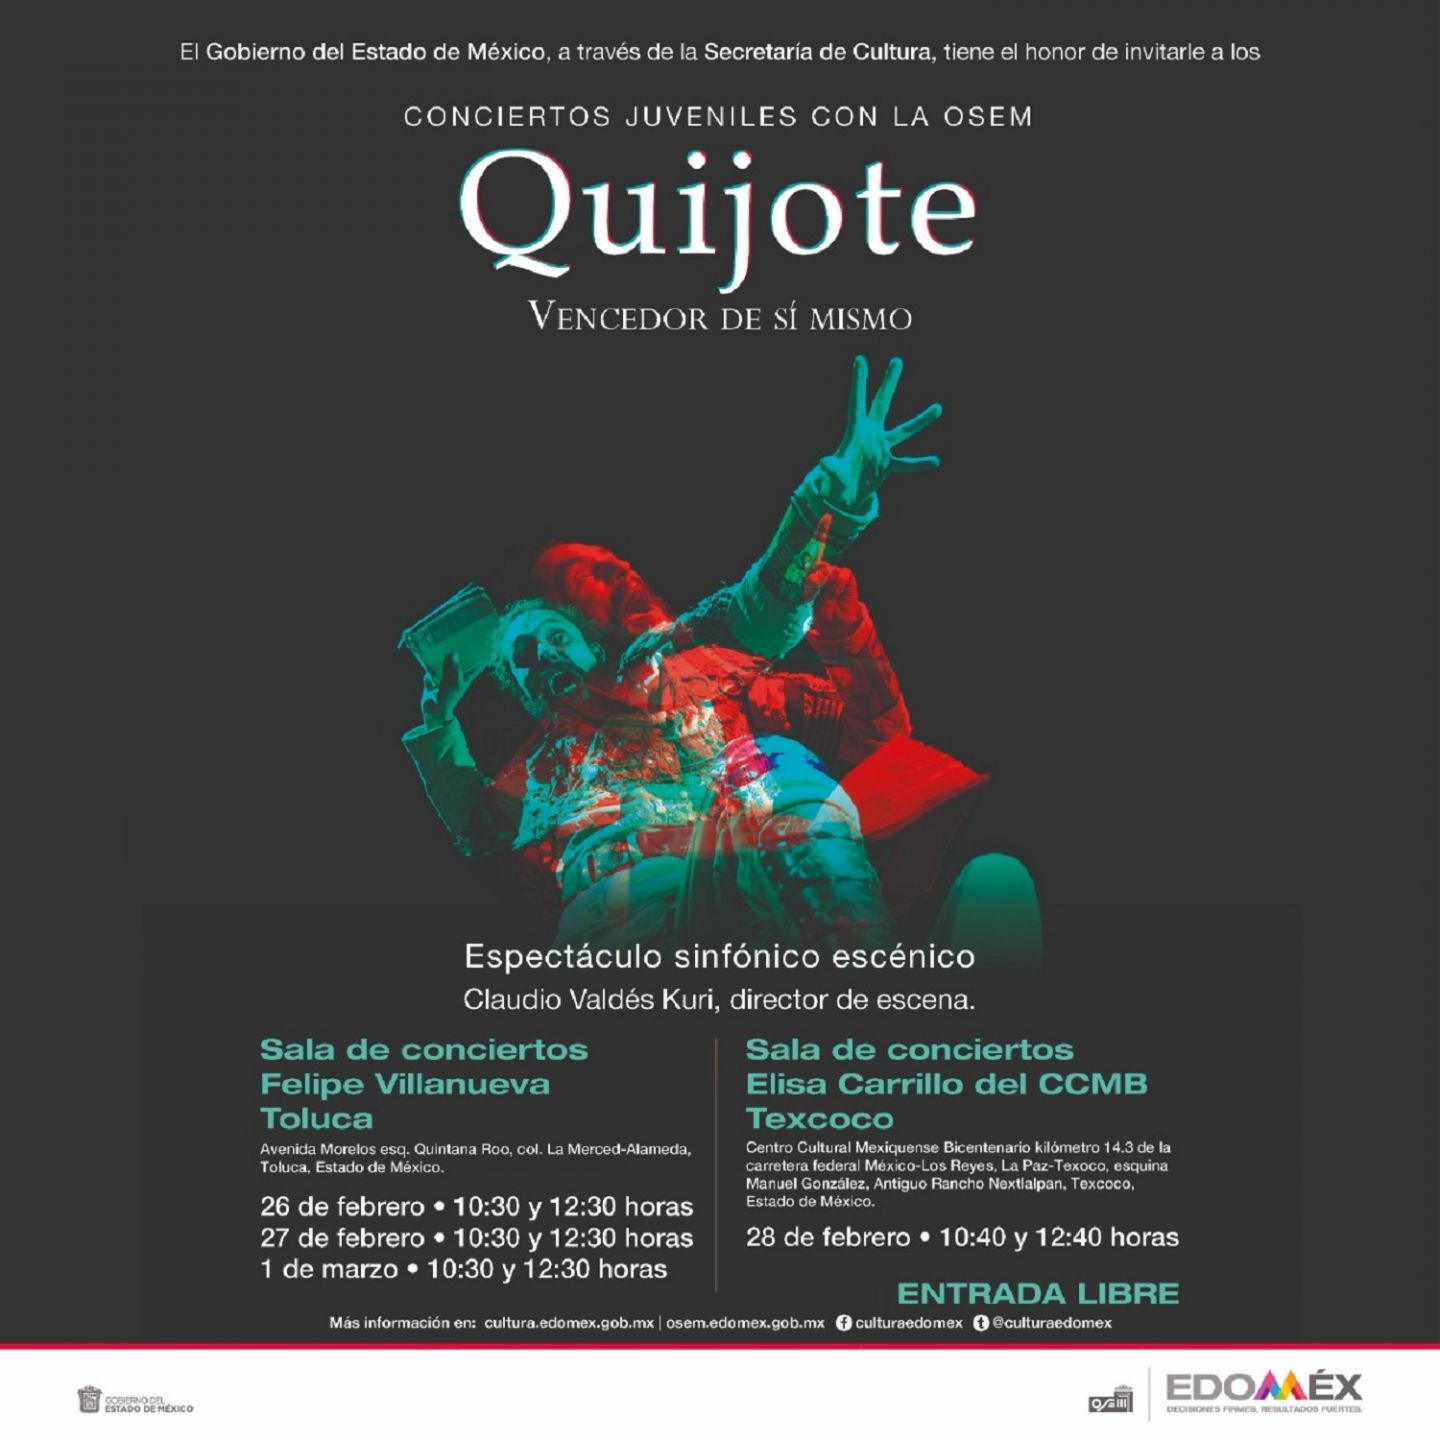 Presenta OSEM espectáculo sinfónico escénico basado en " El Quijote" de Miguel de Cervantes Saavedra.